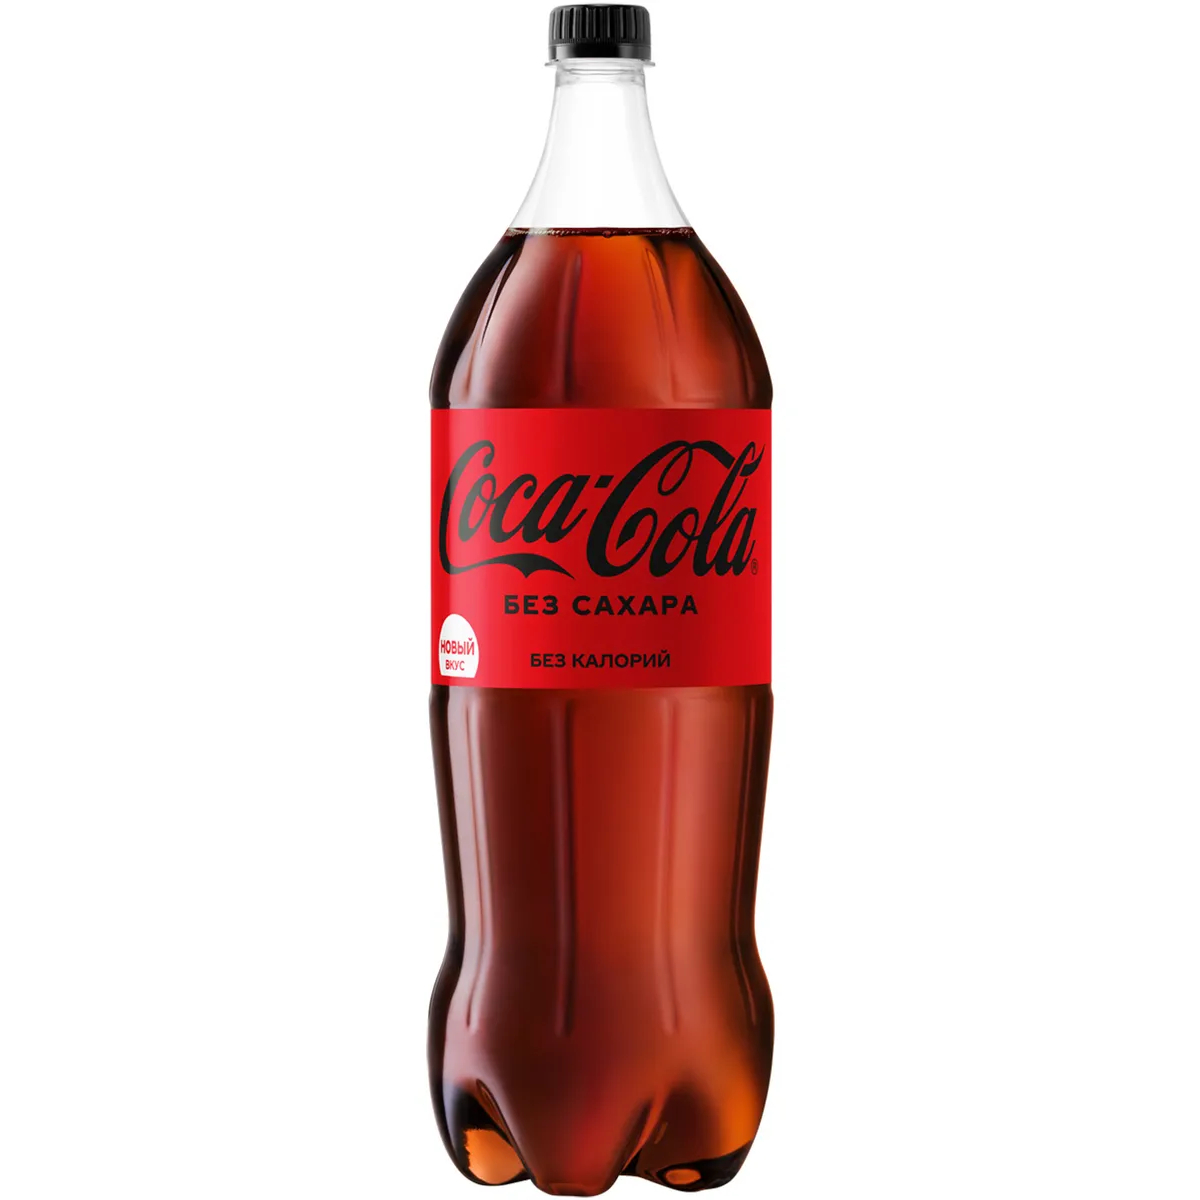 Напиток Coca-Cola Zero без сахара, 2 л напиток молочный кокосовый foco без сахара 0 33 литра без газа тетра пак 12 шт в уп